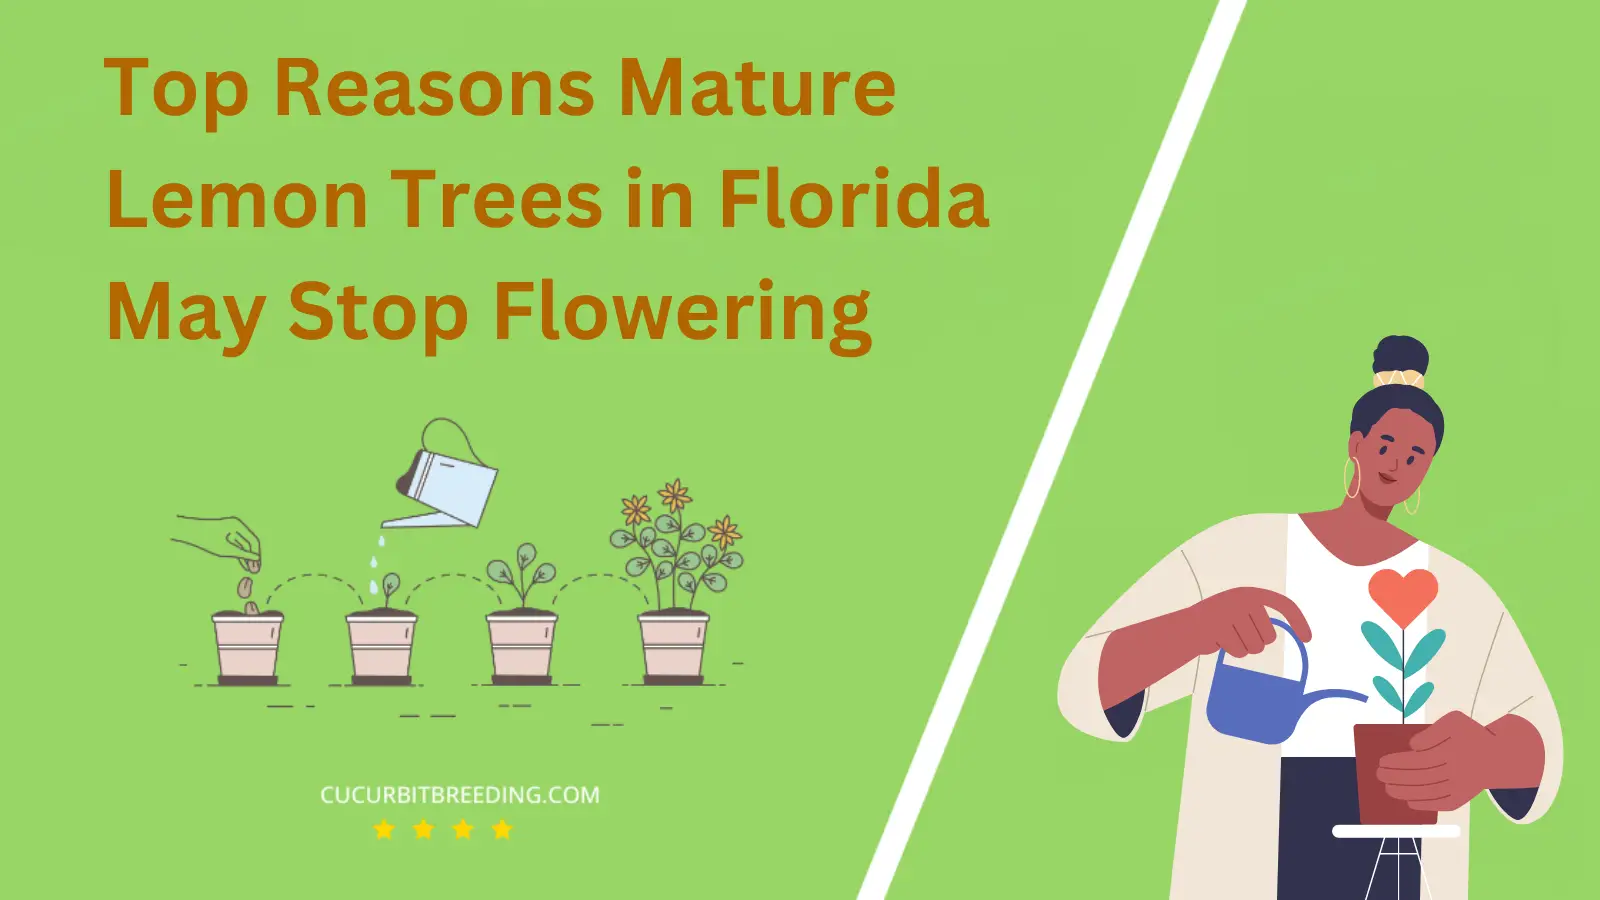 Top Reasons Mature Lemon Trees in Florida May Stop Flowering